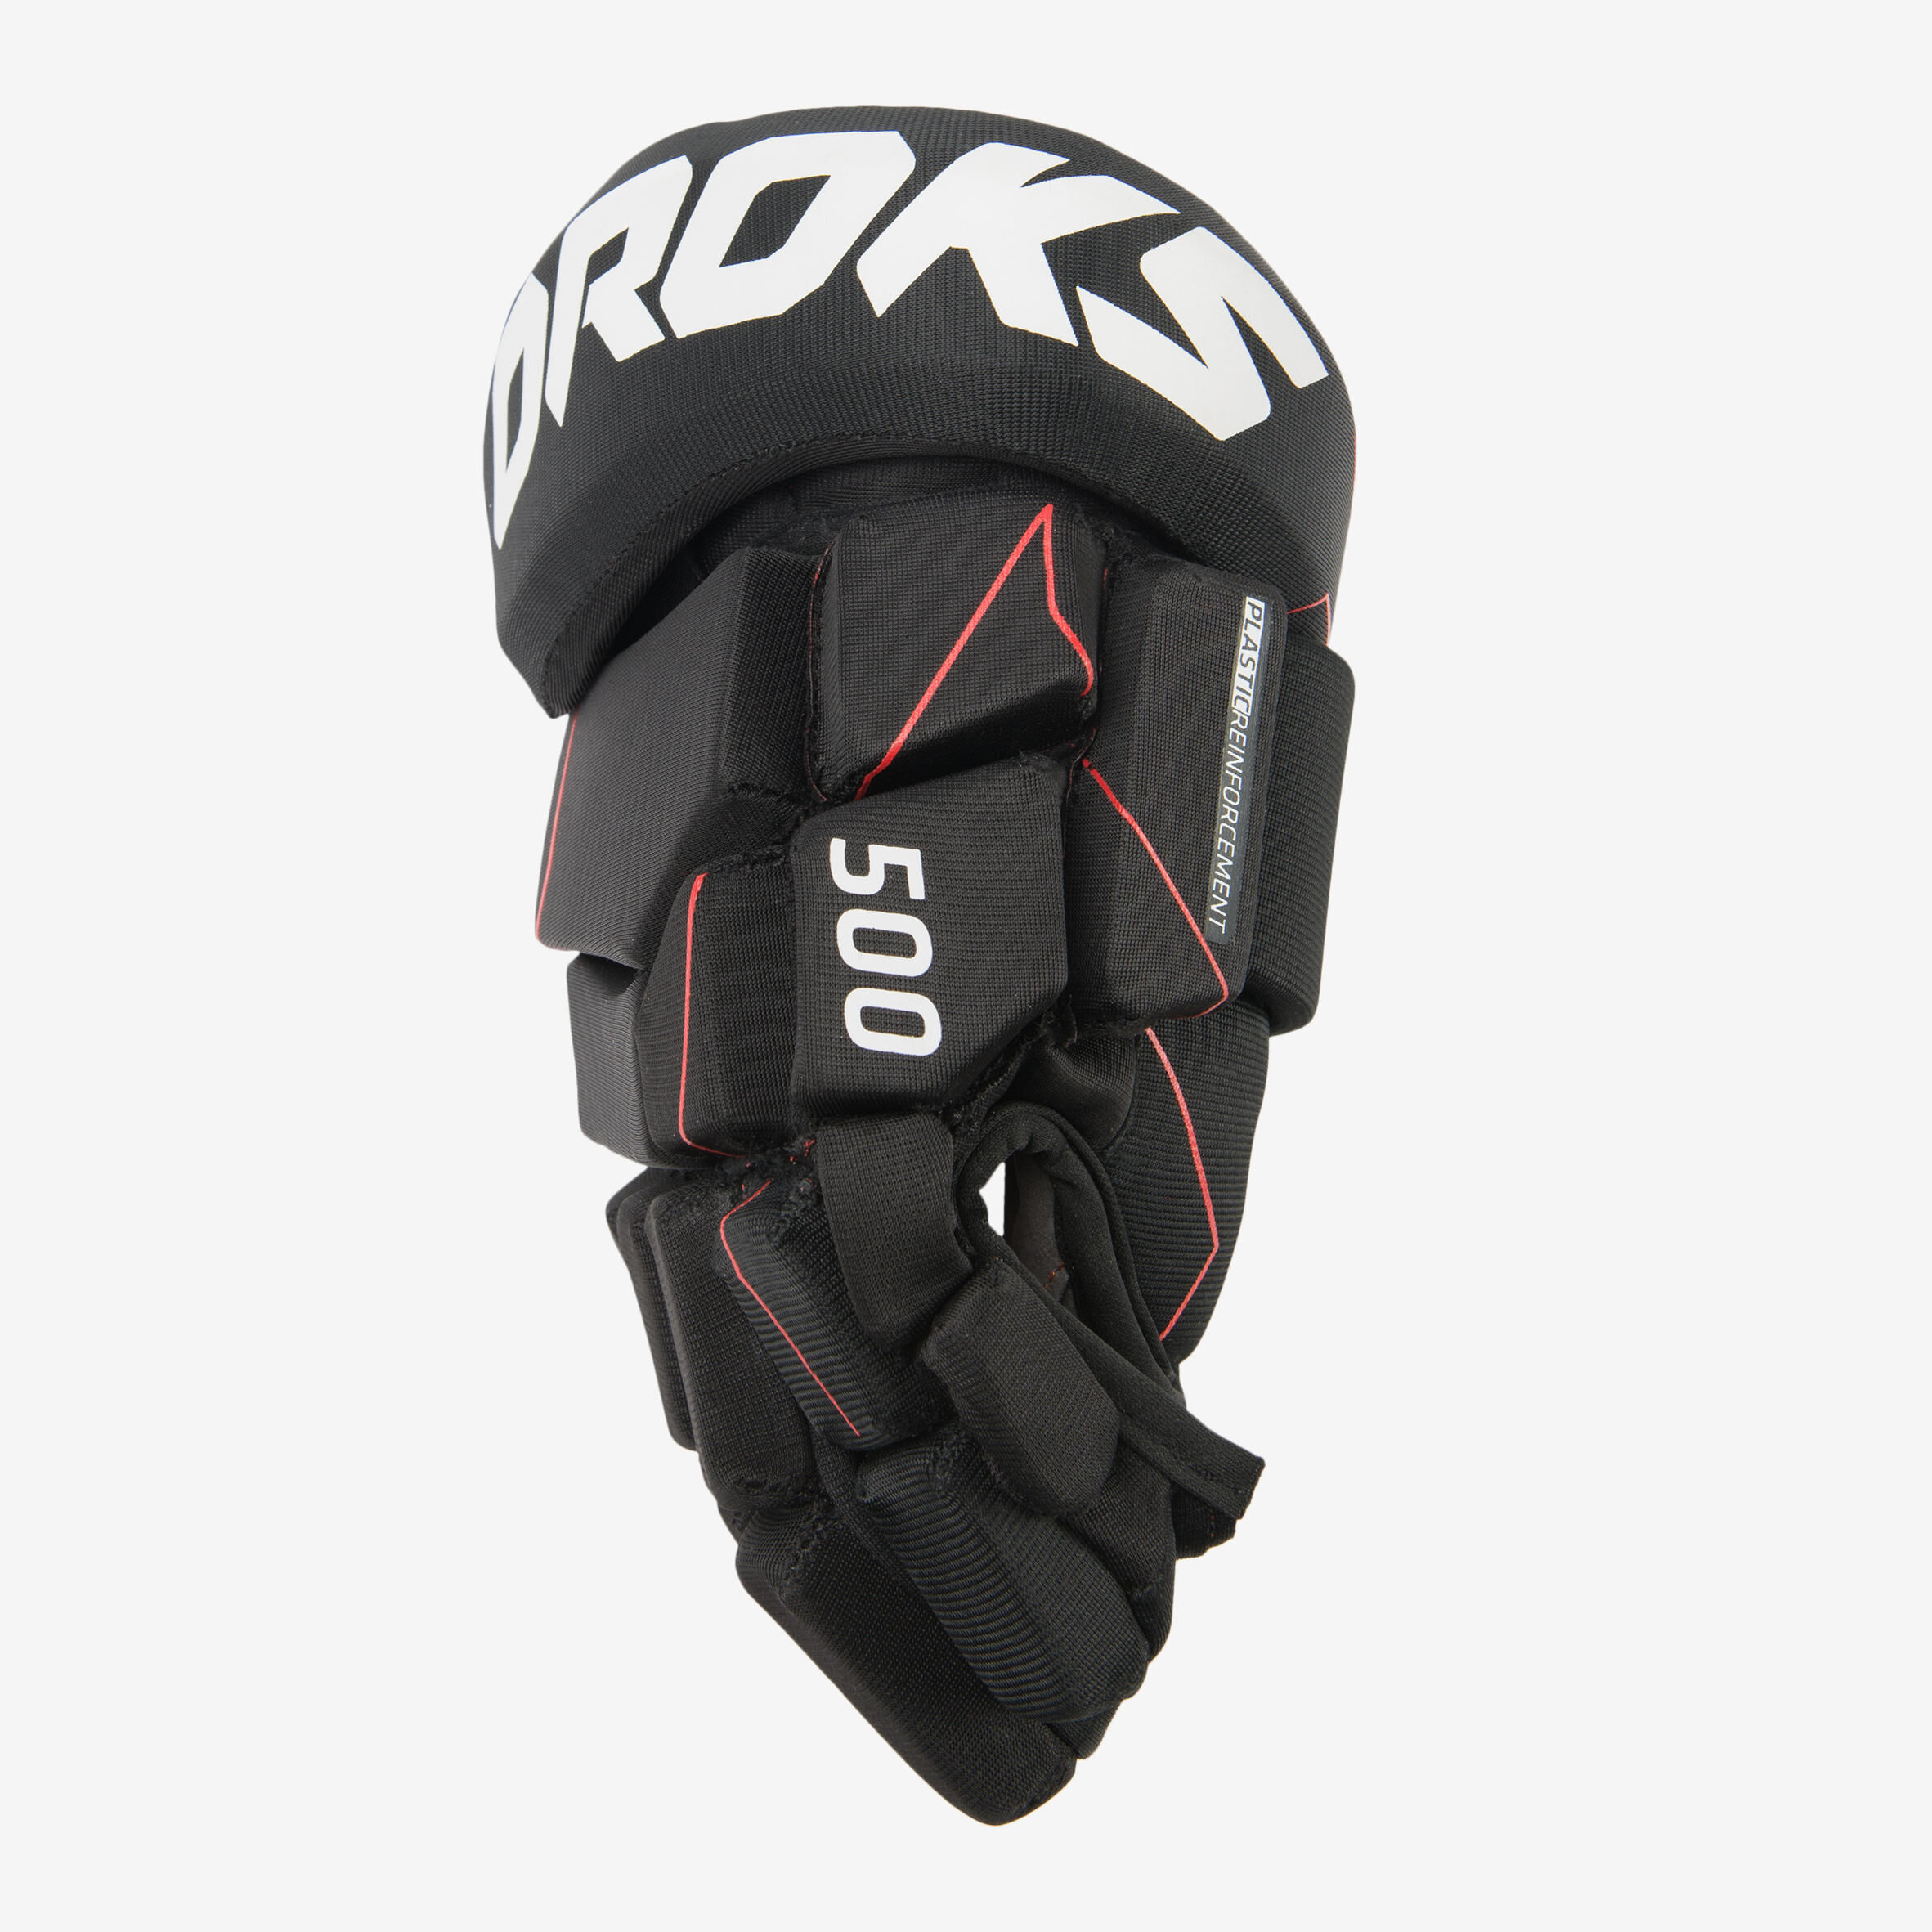 OROKS IH 500 Hockey Gloves